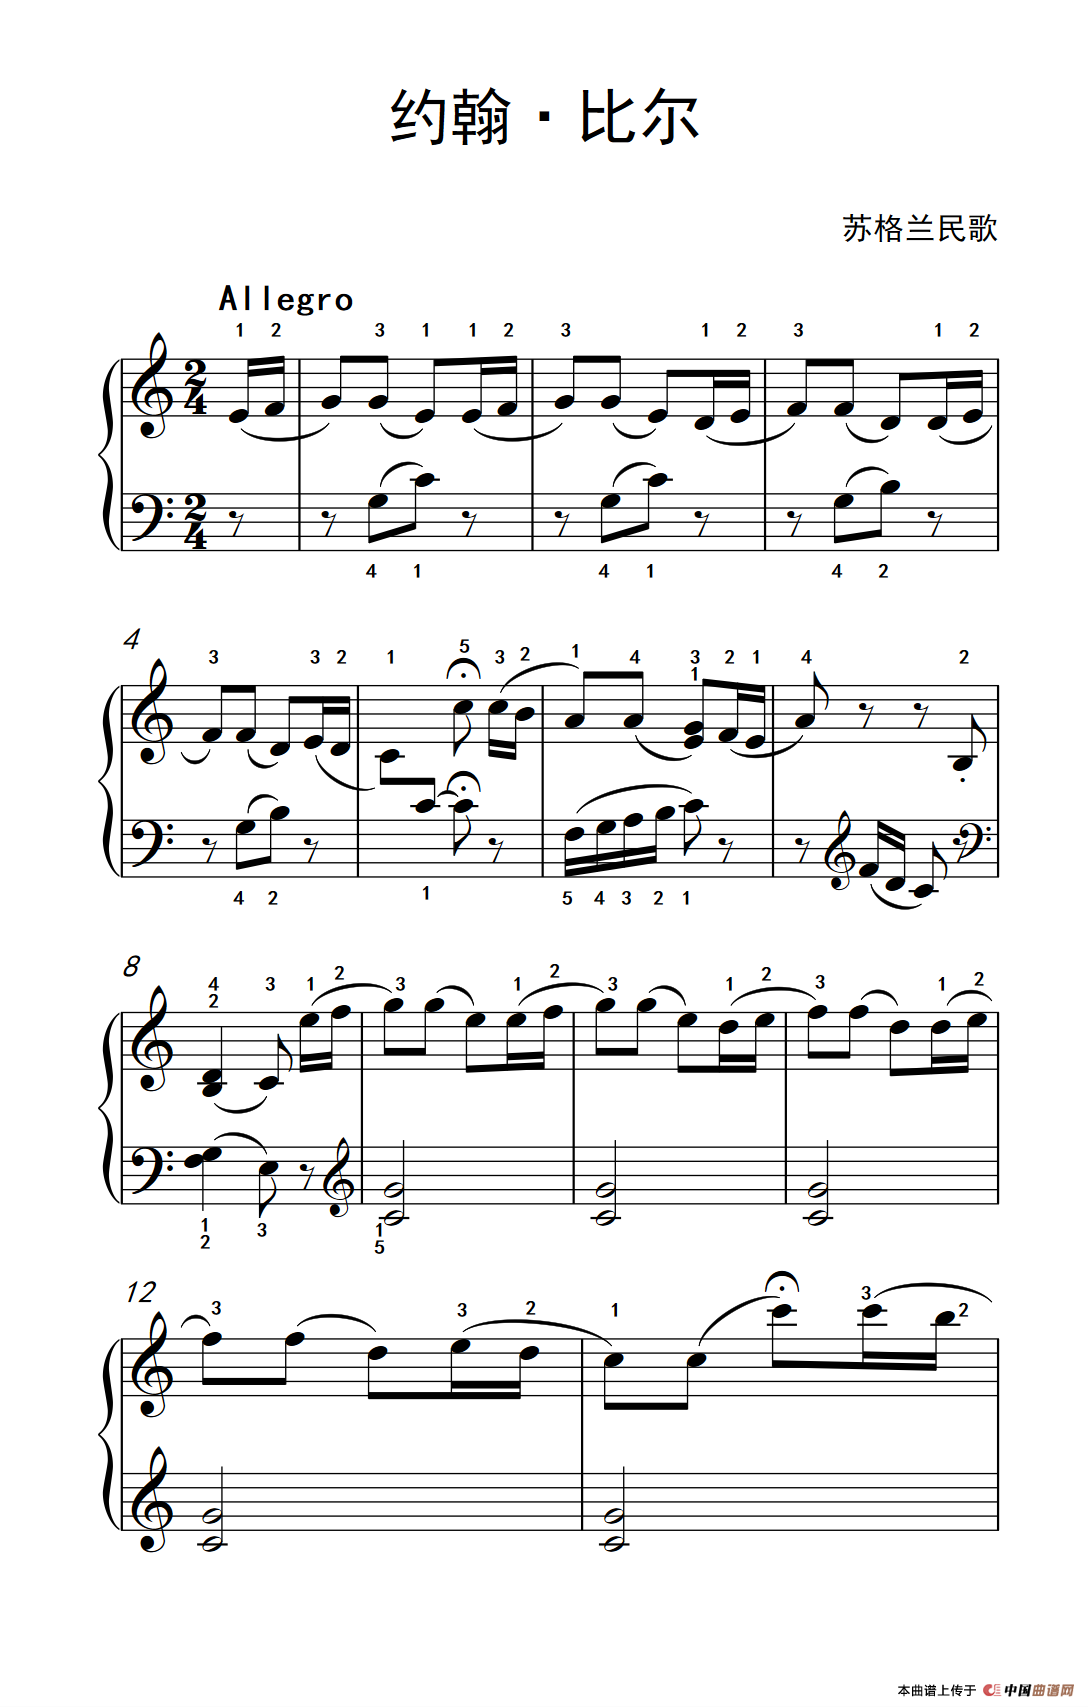 《约翰·比尔》钢琴曲谱图分享